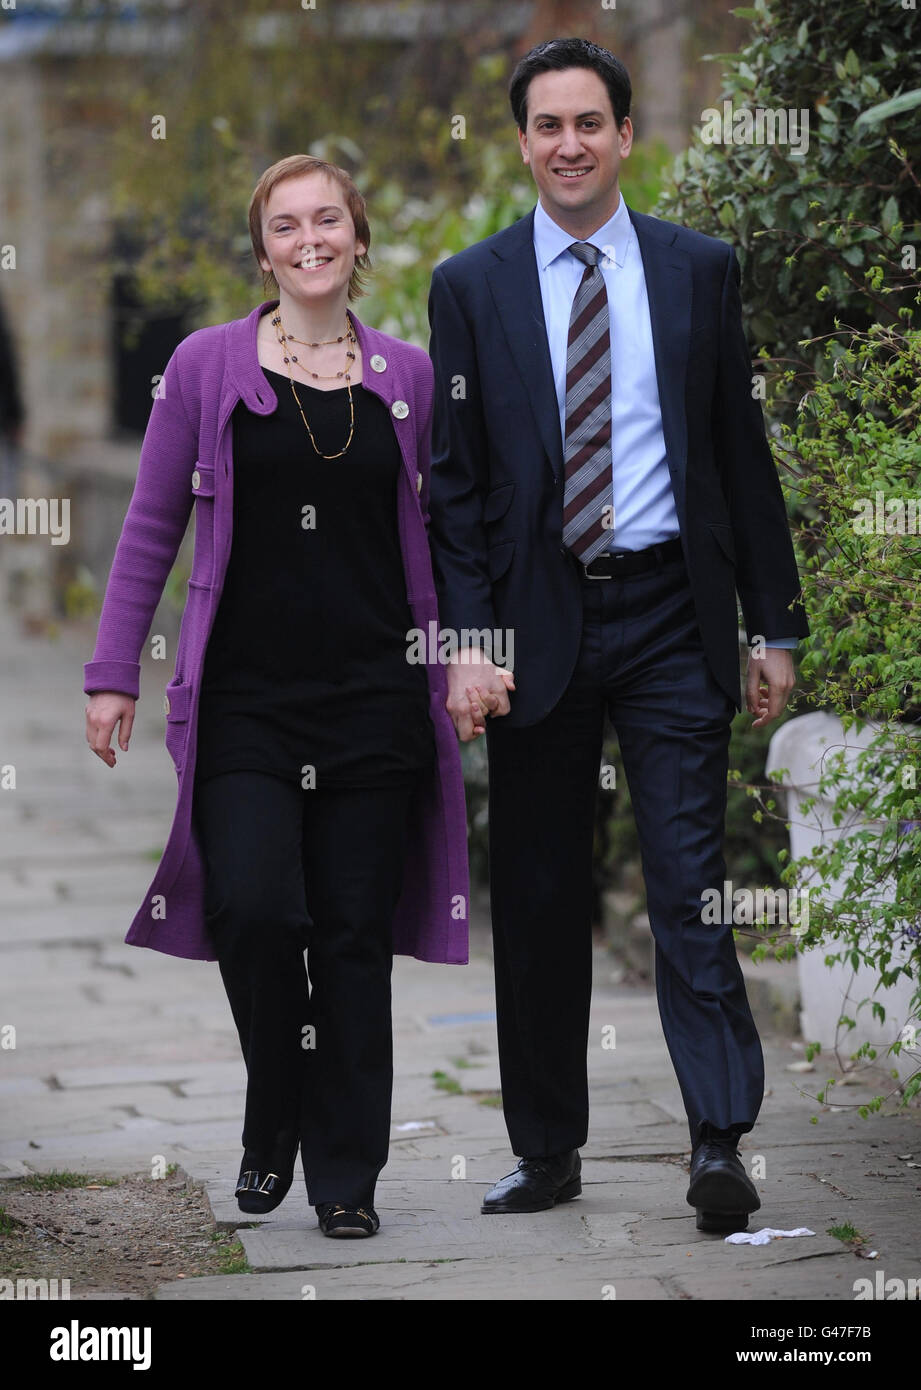 Le leader travailliste Ed Miliband (à droite) et sa partenaire à long terme Justine Thornton quittent leur domicile dans le nord de Londres après avoir annoncé qu’ils se marieront le 27 mai. Banque D'Images